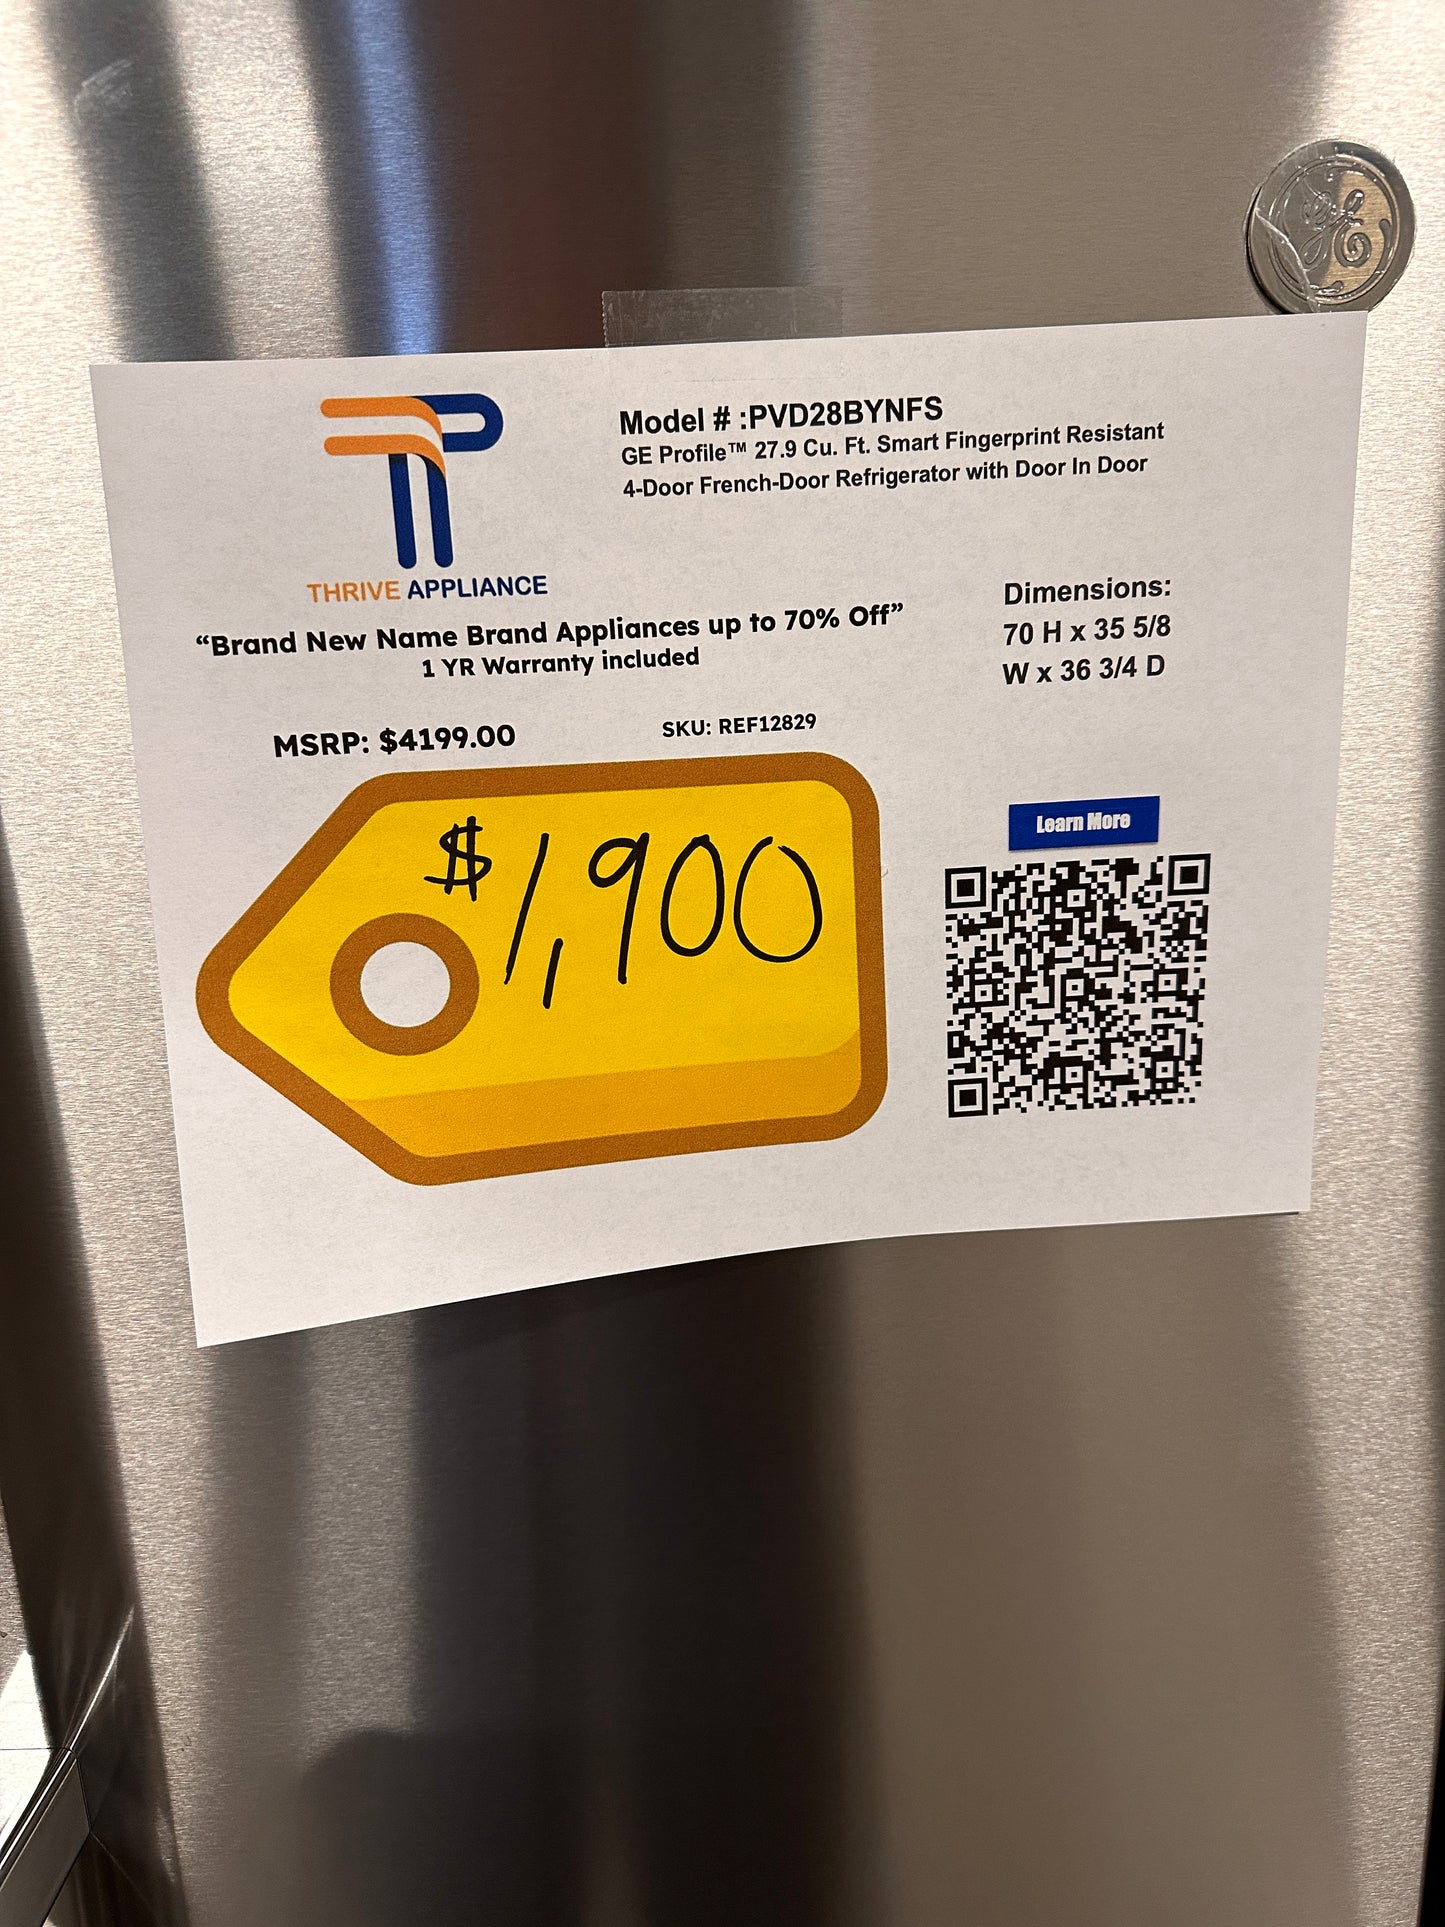 Smart Refrigerator with Door-In-Door - Stainless steel  Model:PVD28BYNFS